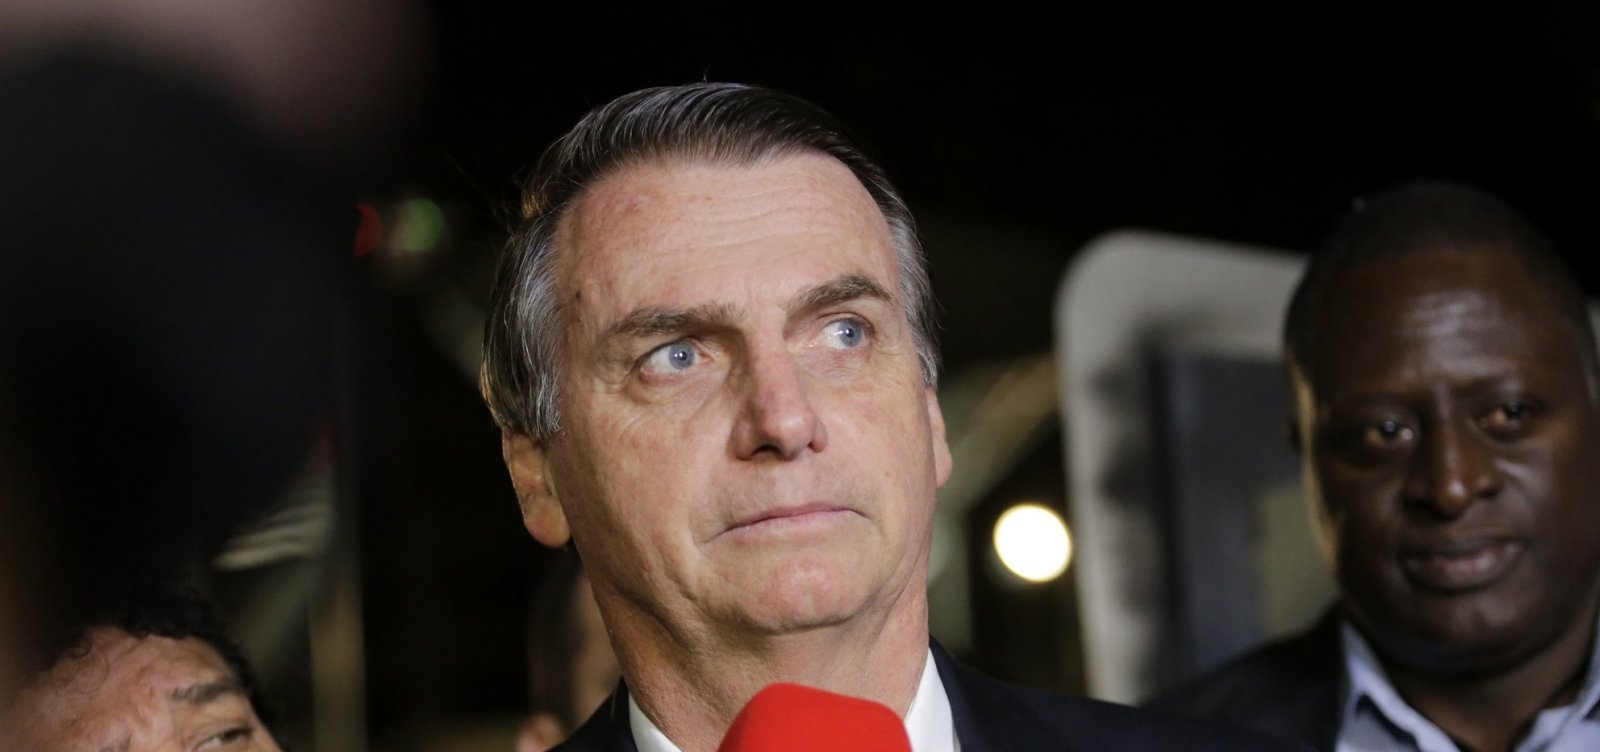 Partidos de centro consideram se unir em federação para sobreviver a Bolsonaro